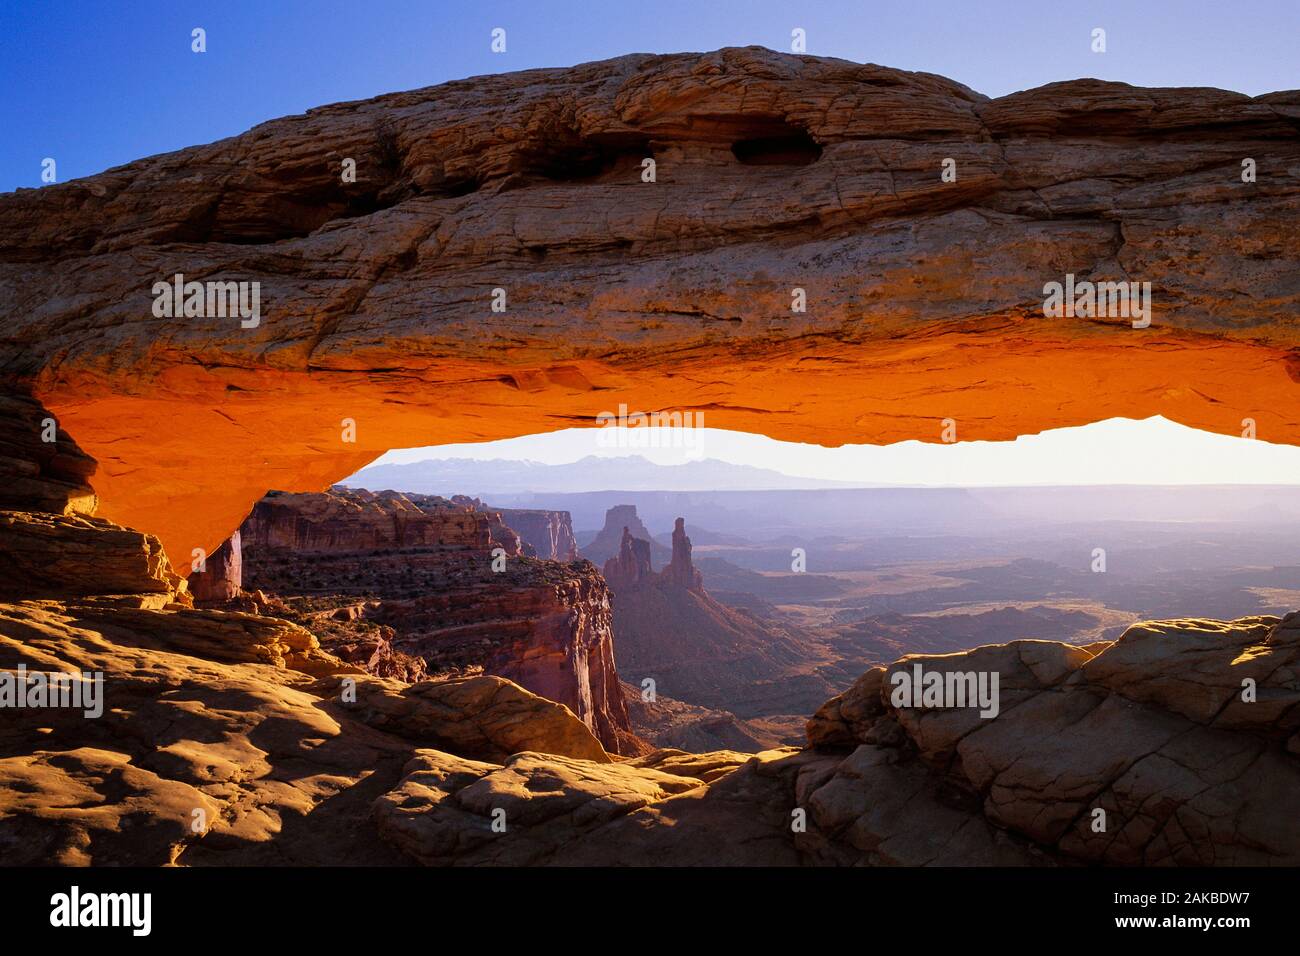 Landschaft mit natürlichem Sandstein arch in der Wüste, Mesa Arch, Canyonlands National Park, Utah, USA Stockfoto